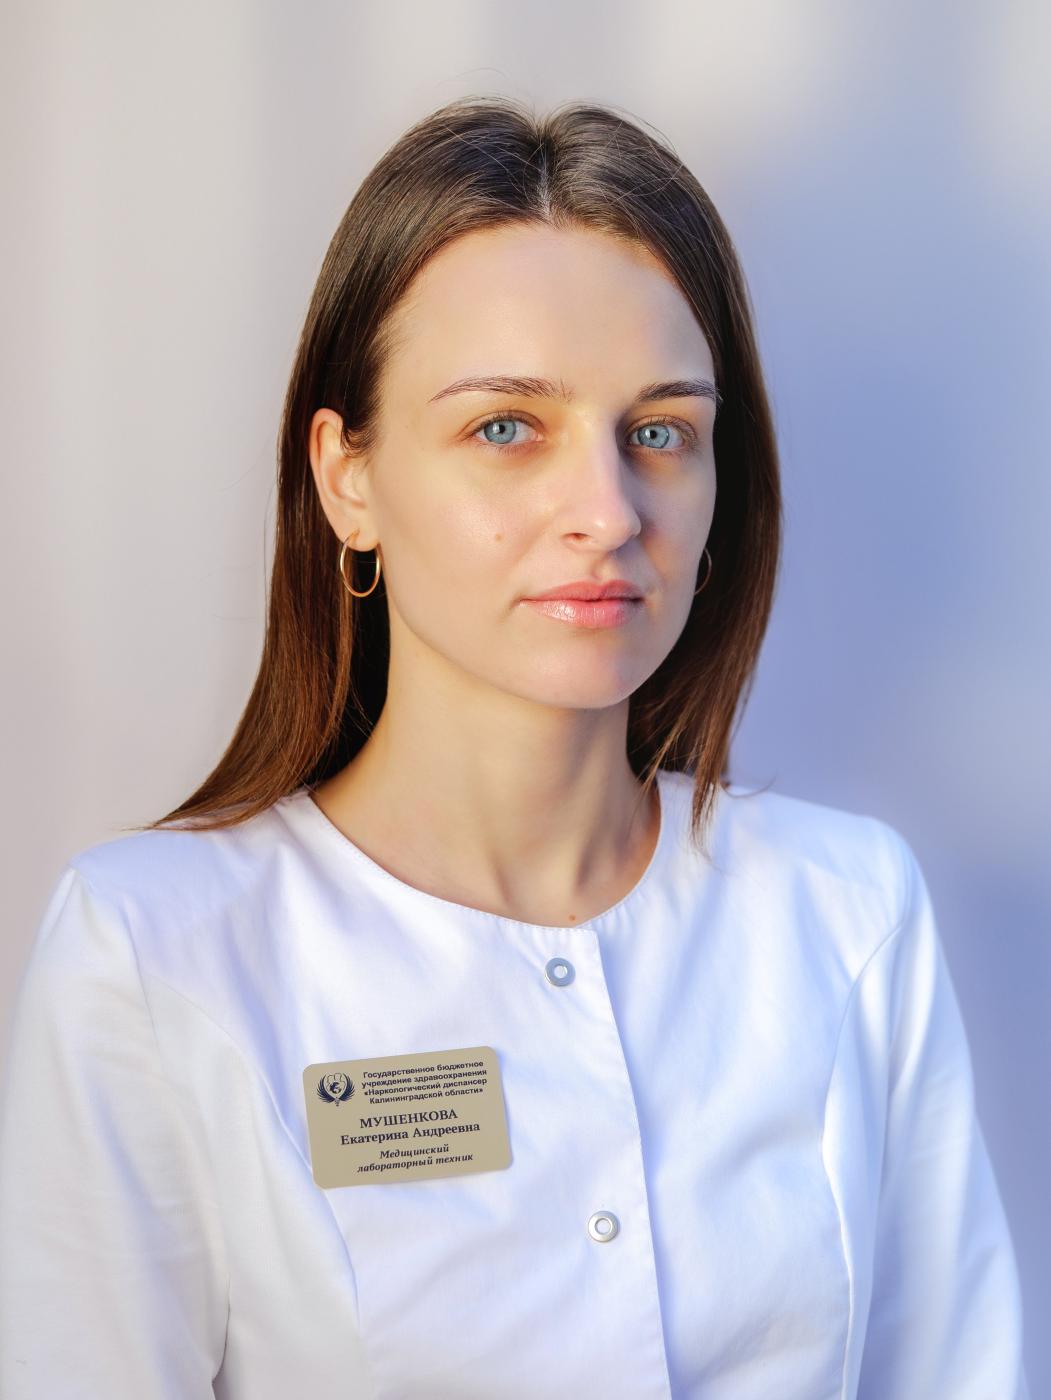 Мушенкова Екатерина Андреевна